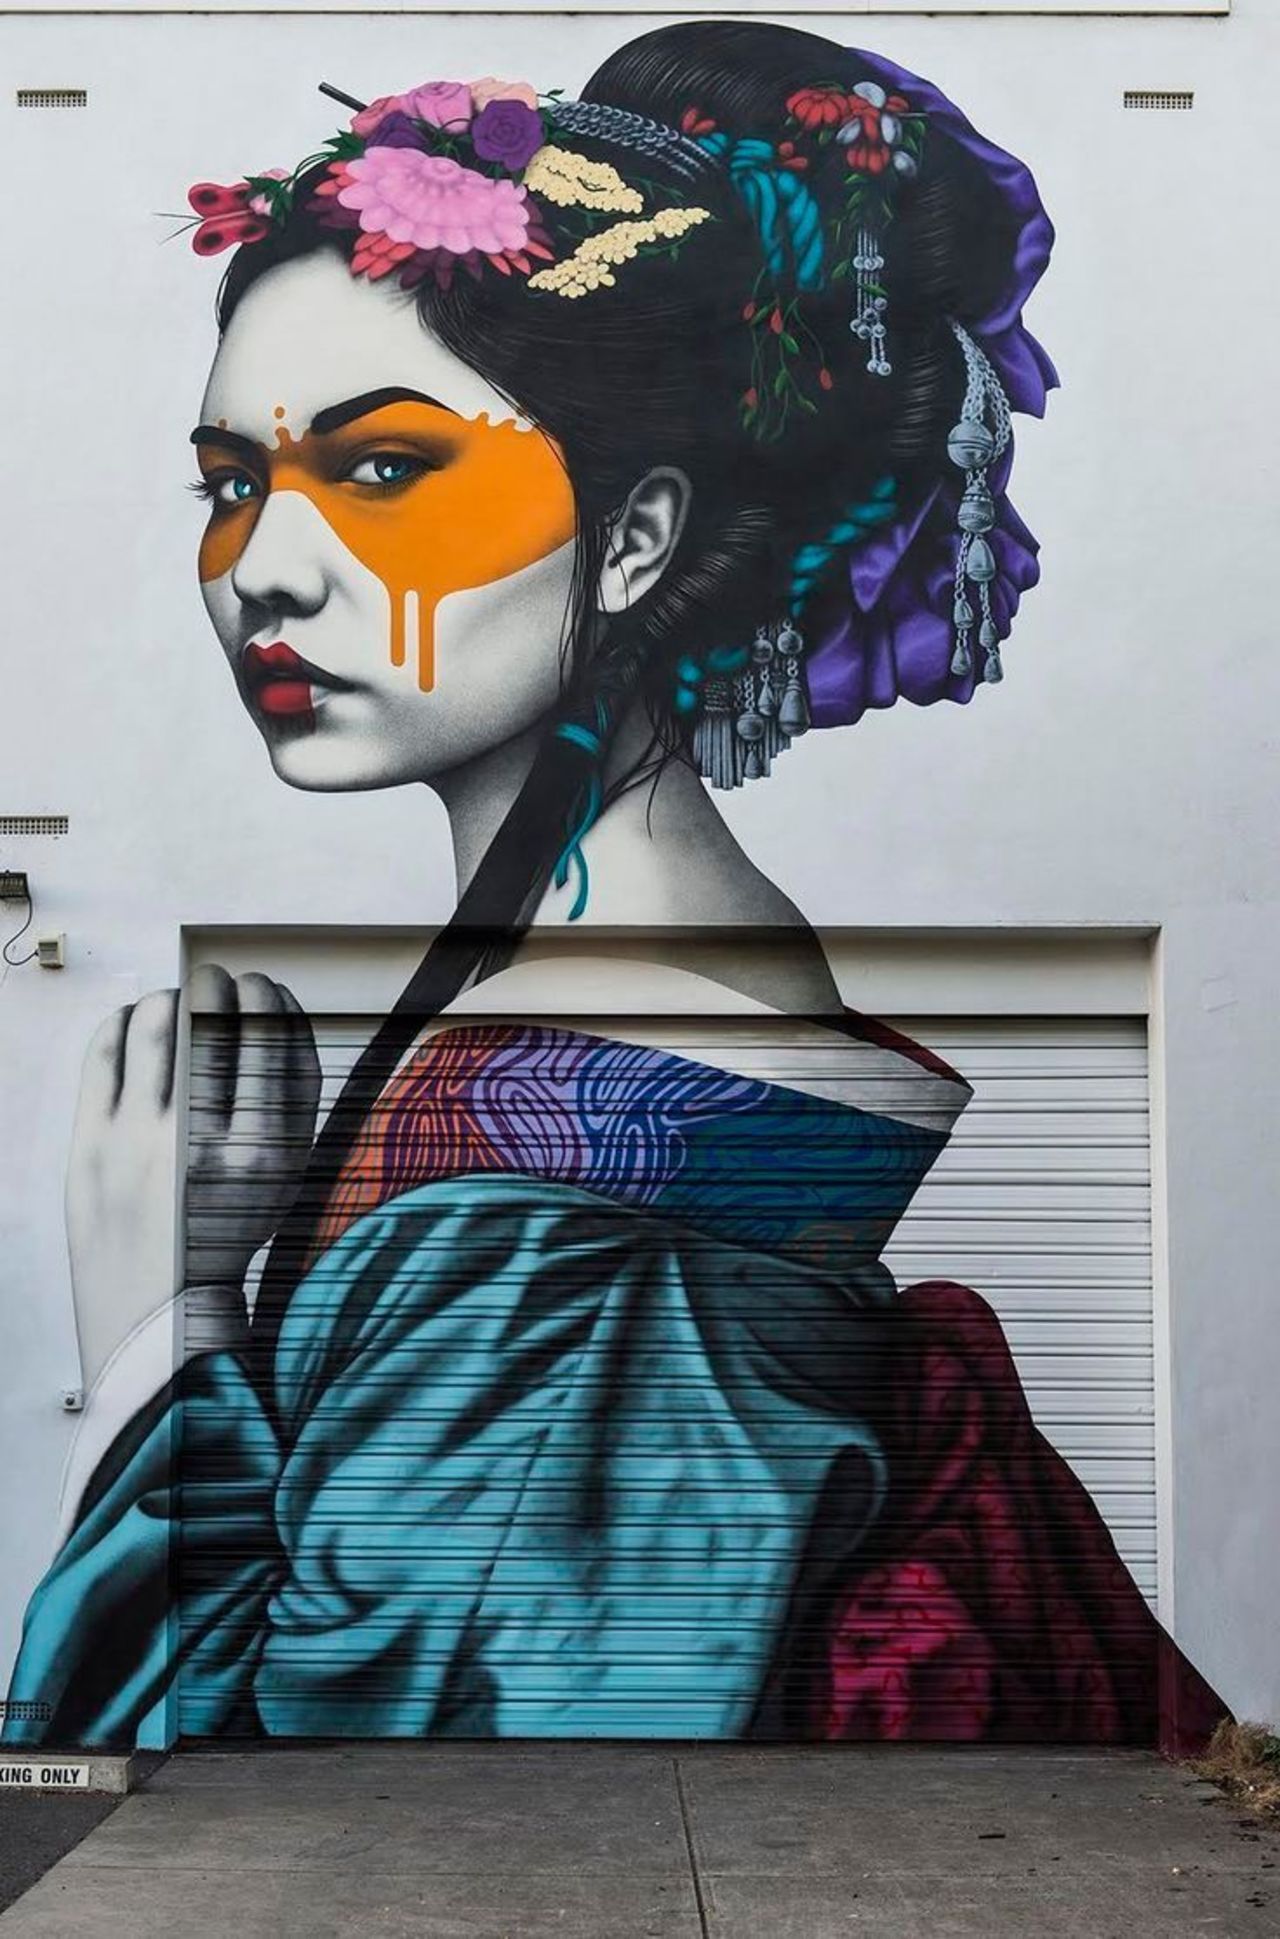 Fin DAC is easily one of my top 5 artists#streetart #mural #graffiti #art https://t.co/2PsX933qFT